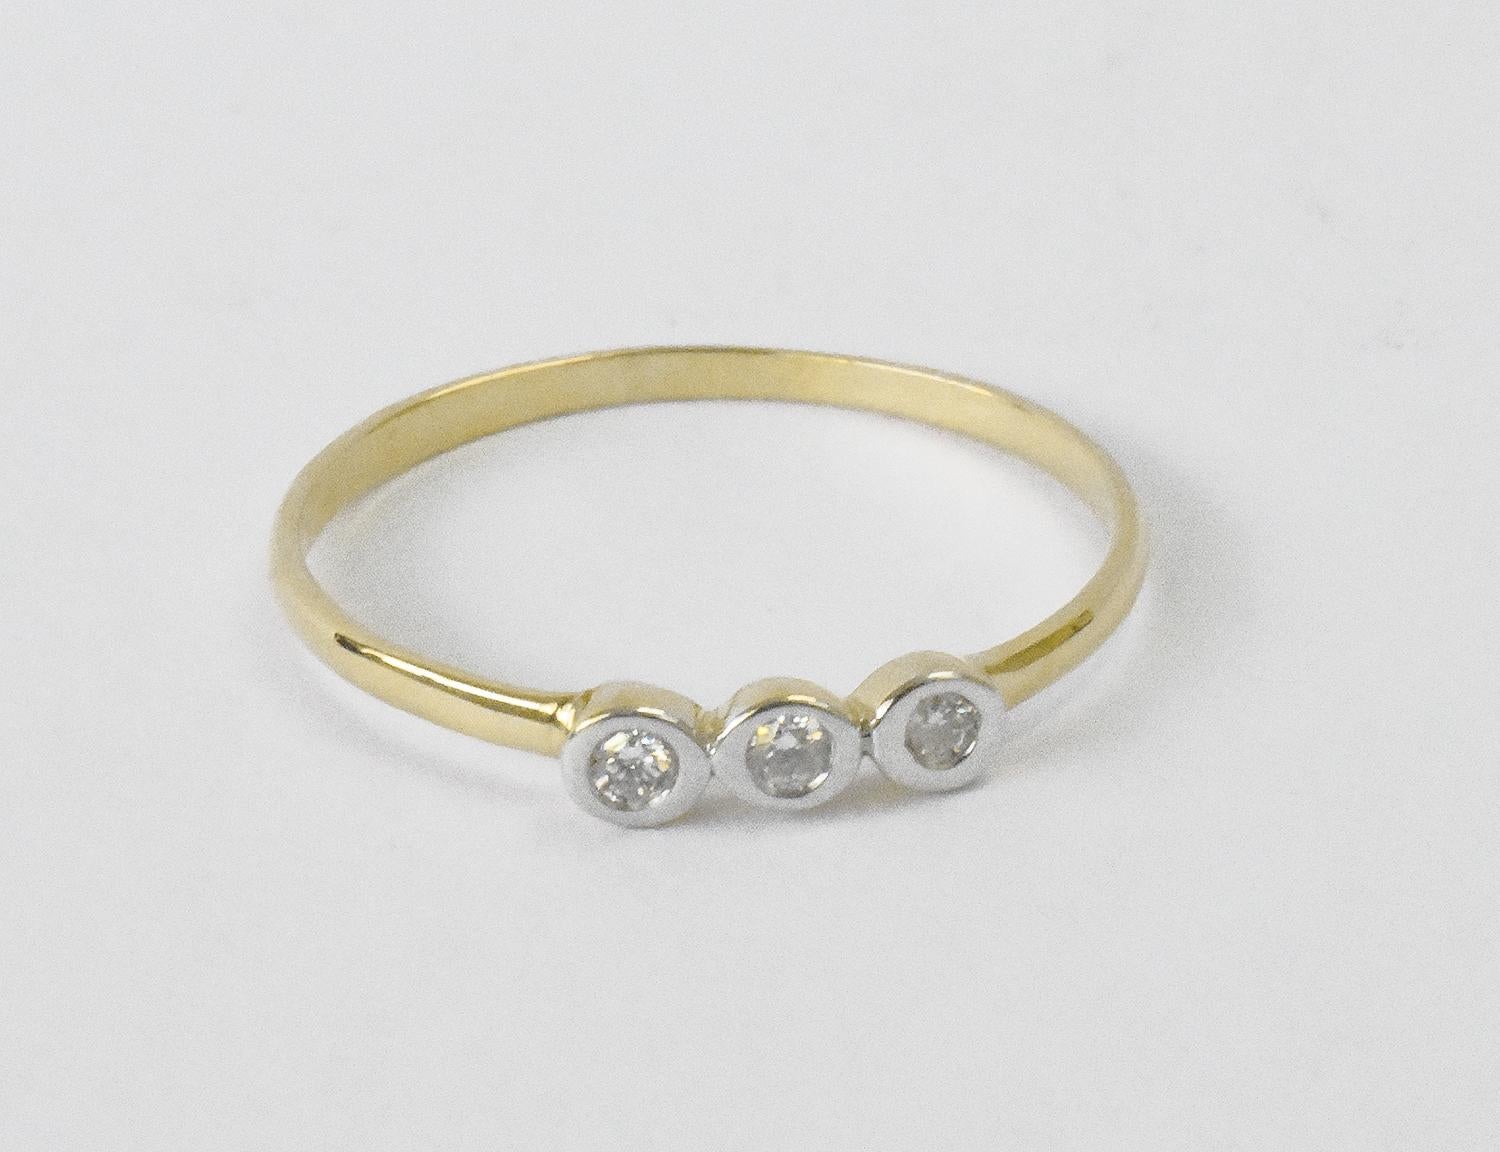 For Sale:  18k Gold Diamond 1.9 mm Ring Bezel Setting Three Diamond Ring Trio Diamond Ring 3